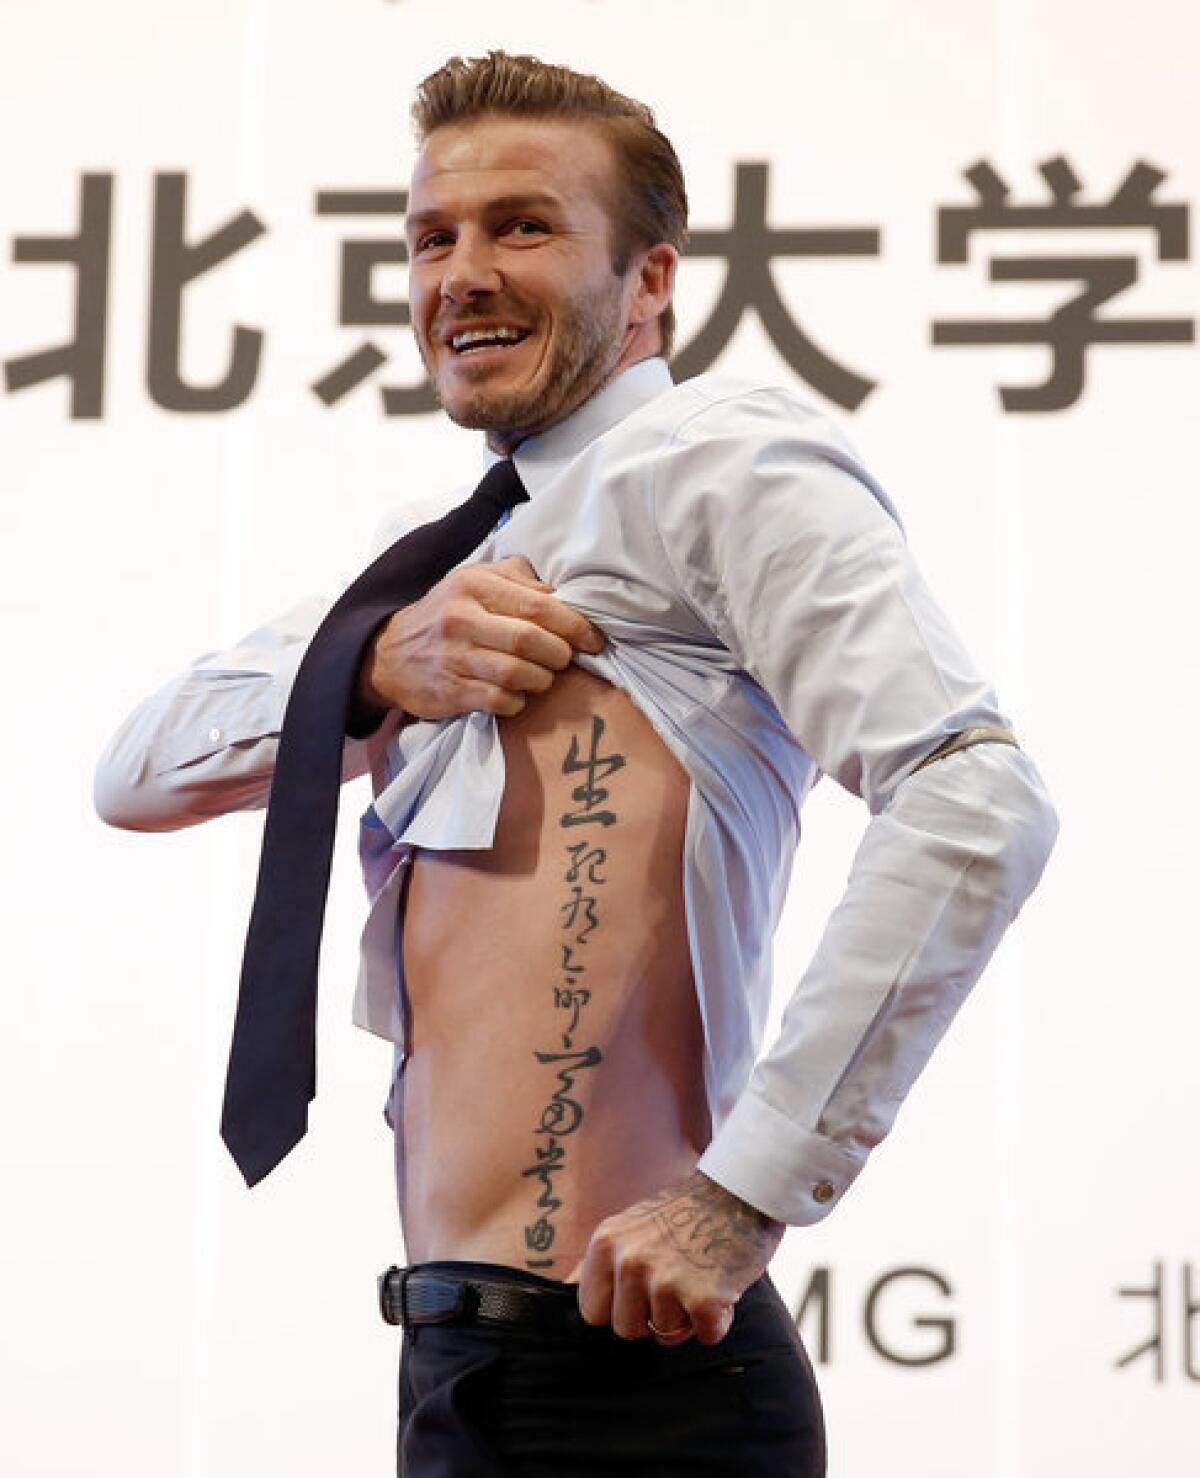 David Beckham shows his tattoo during his visit to Peking University.